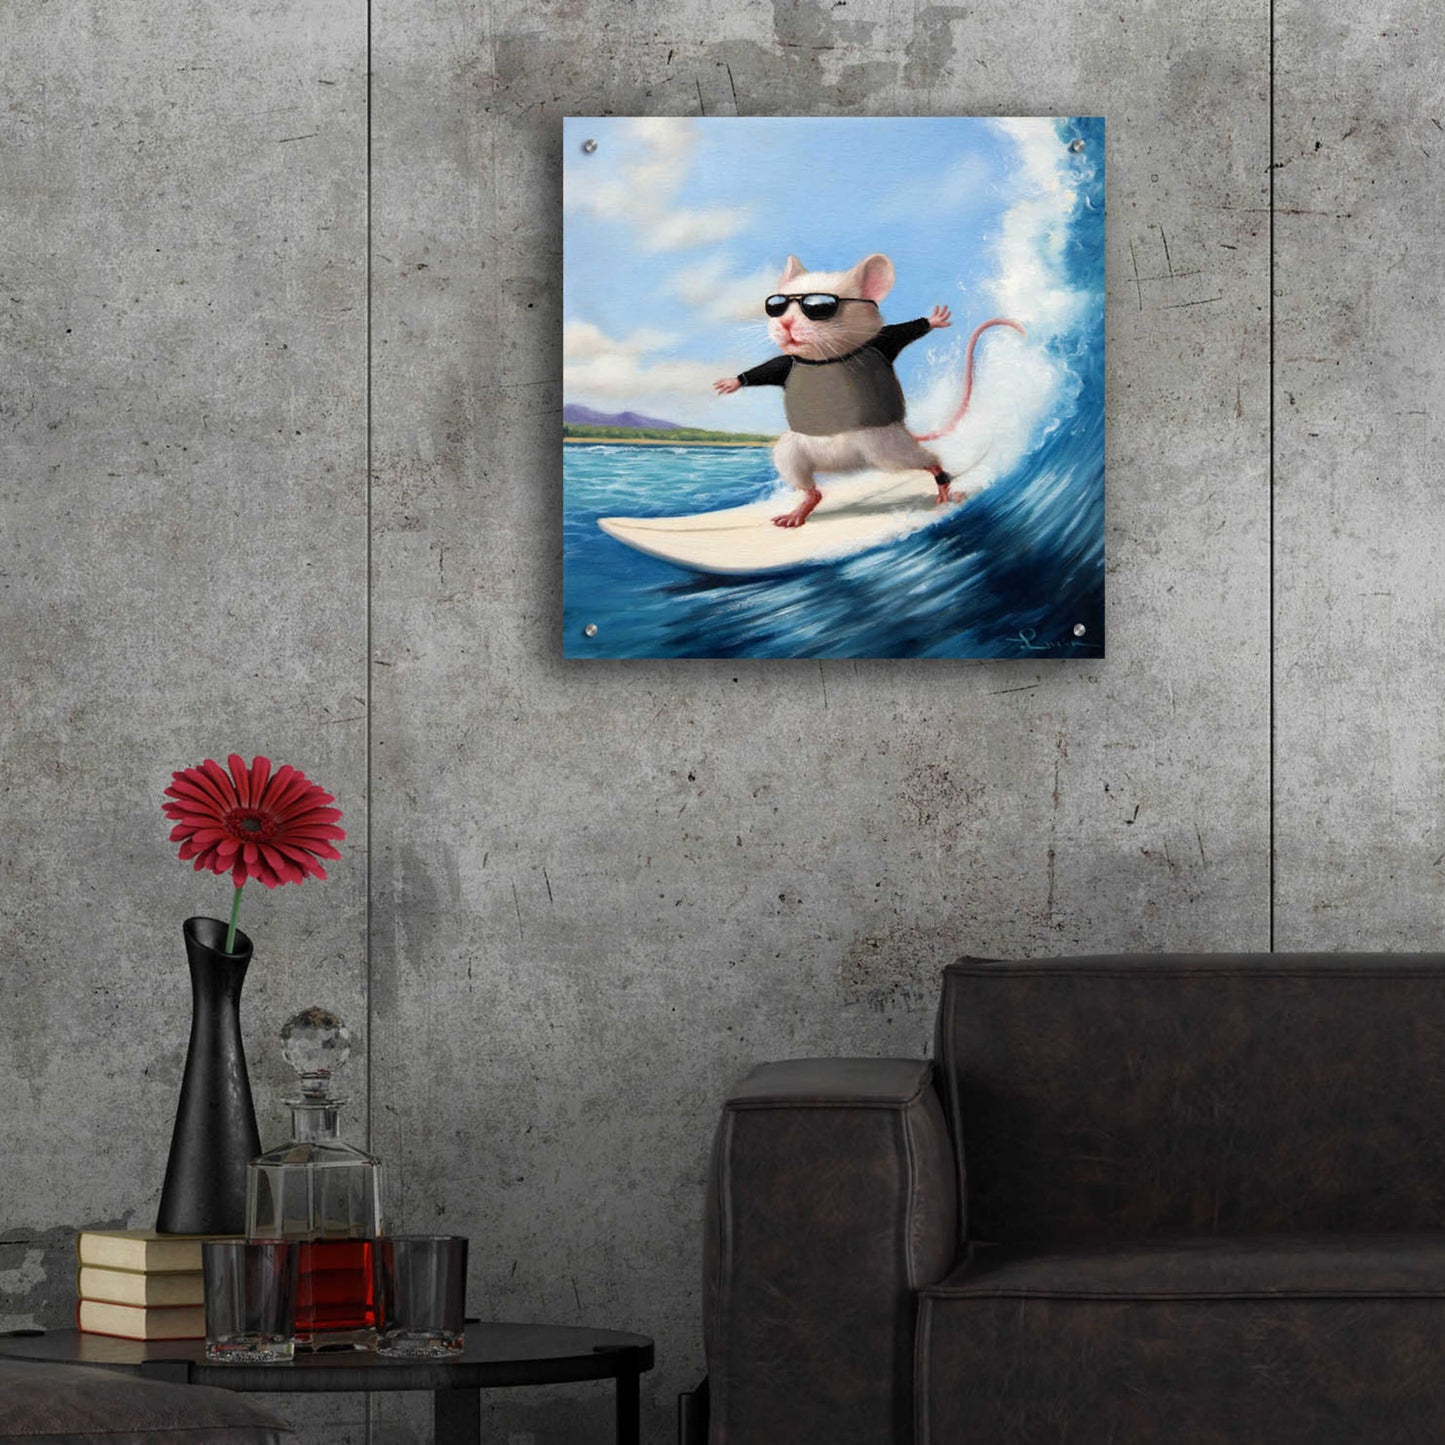 Epic Art 'Surfs Up' by Lucia Heffernan,24x24